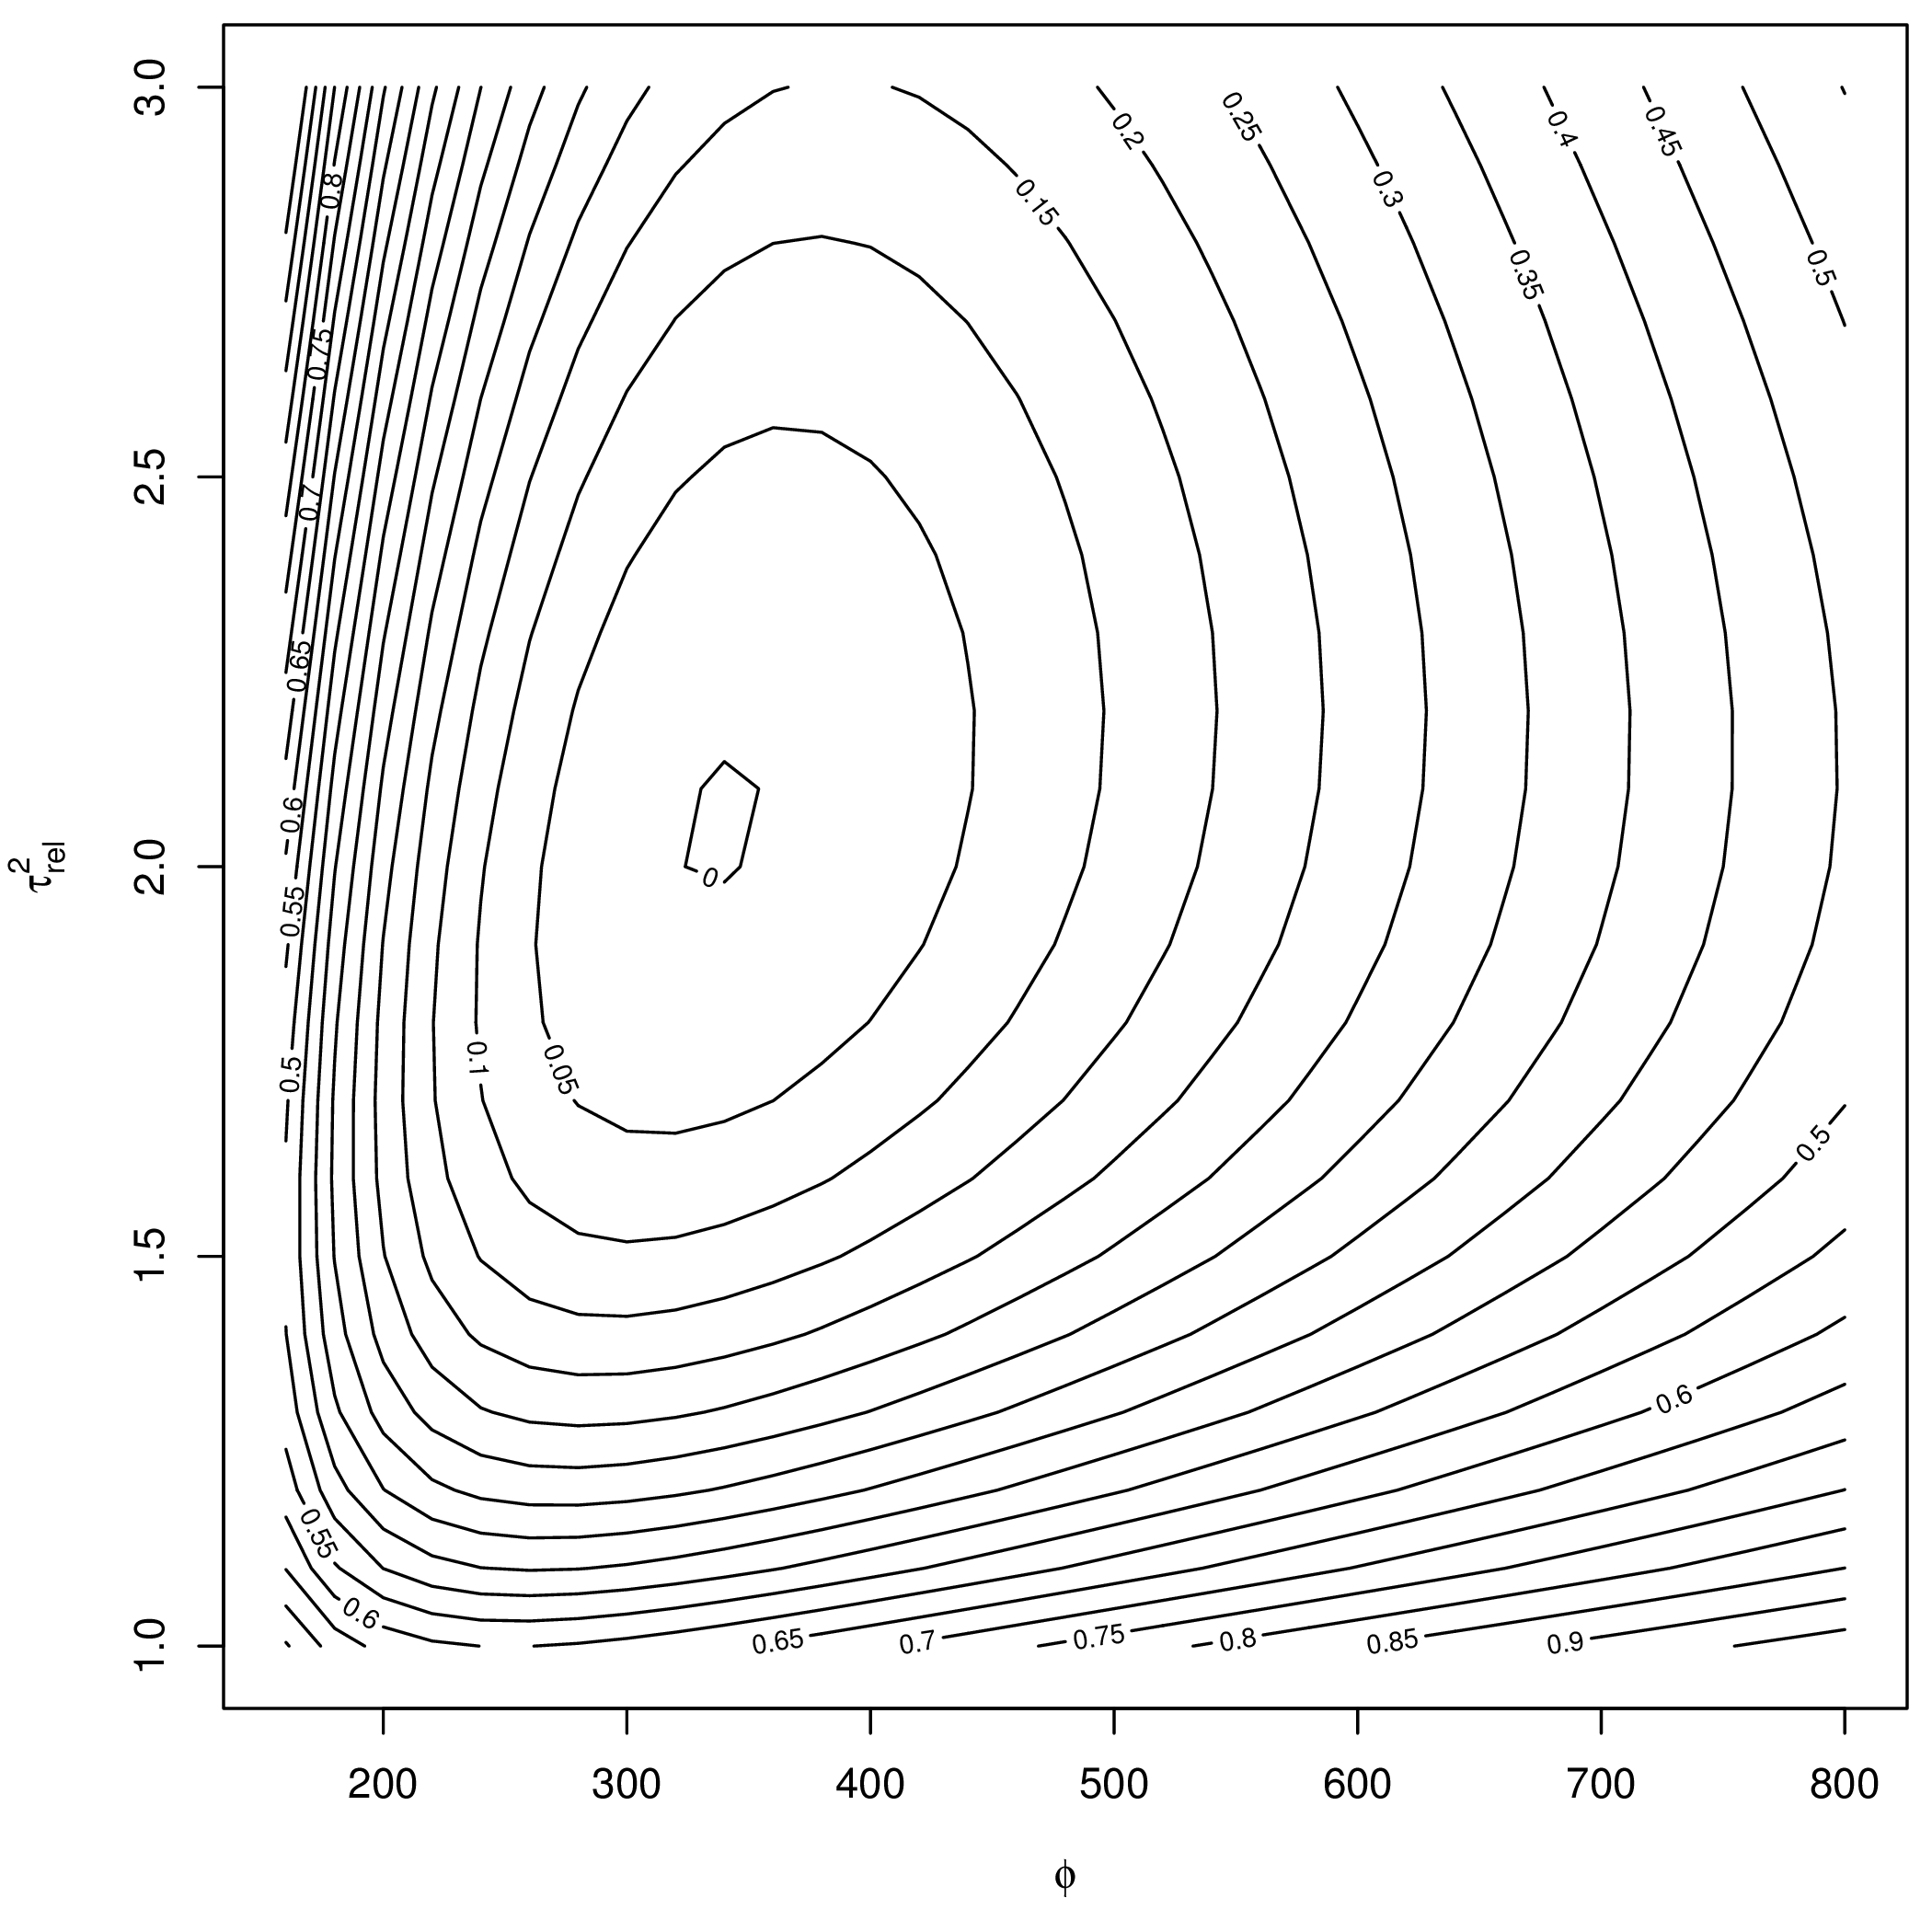 模型 (6.3) 关于参数 \(\phi\) 和 \(\tau^2_{rel} = \tau^2 / \sigma^2\) 的剖面似然函数轮廓图